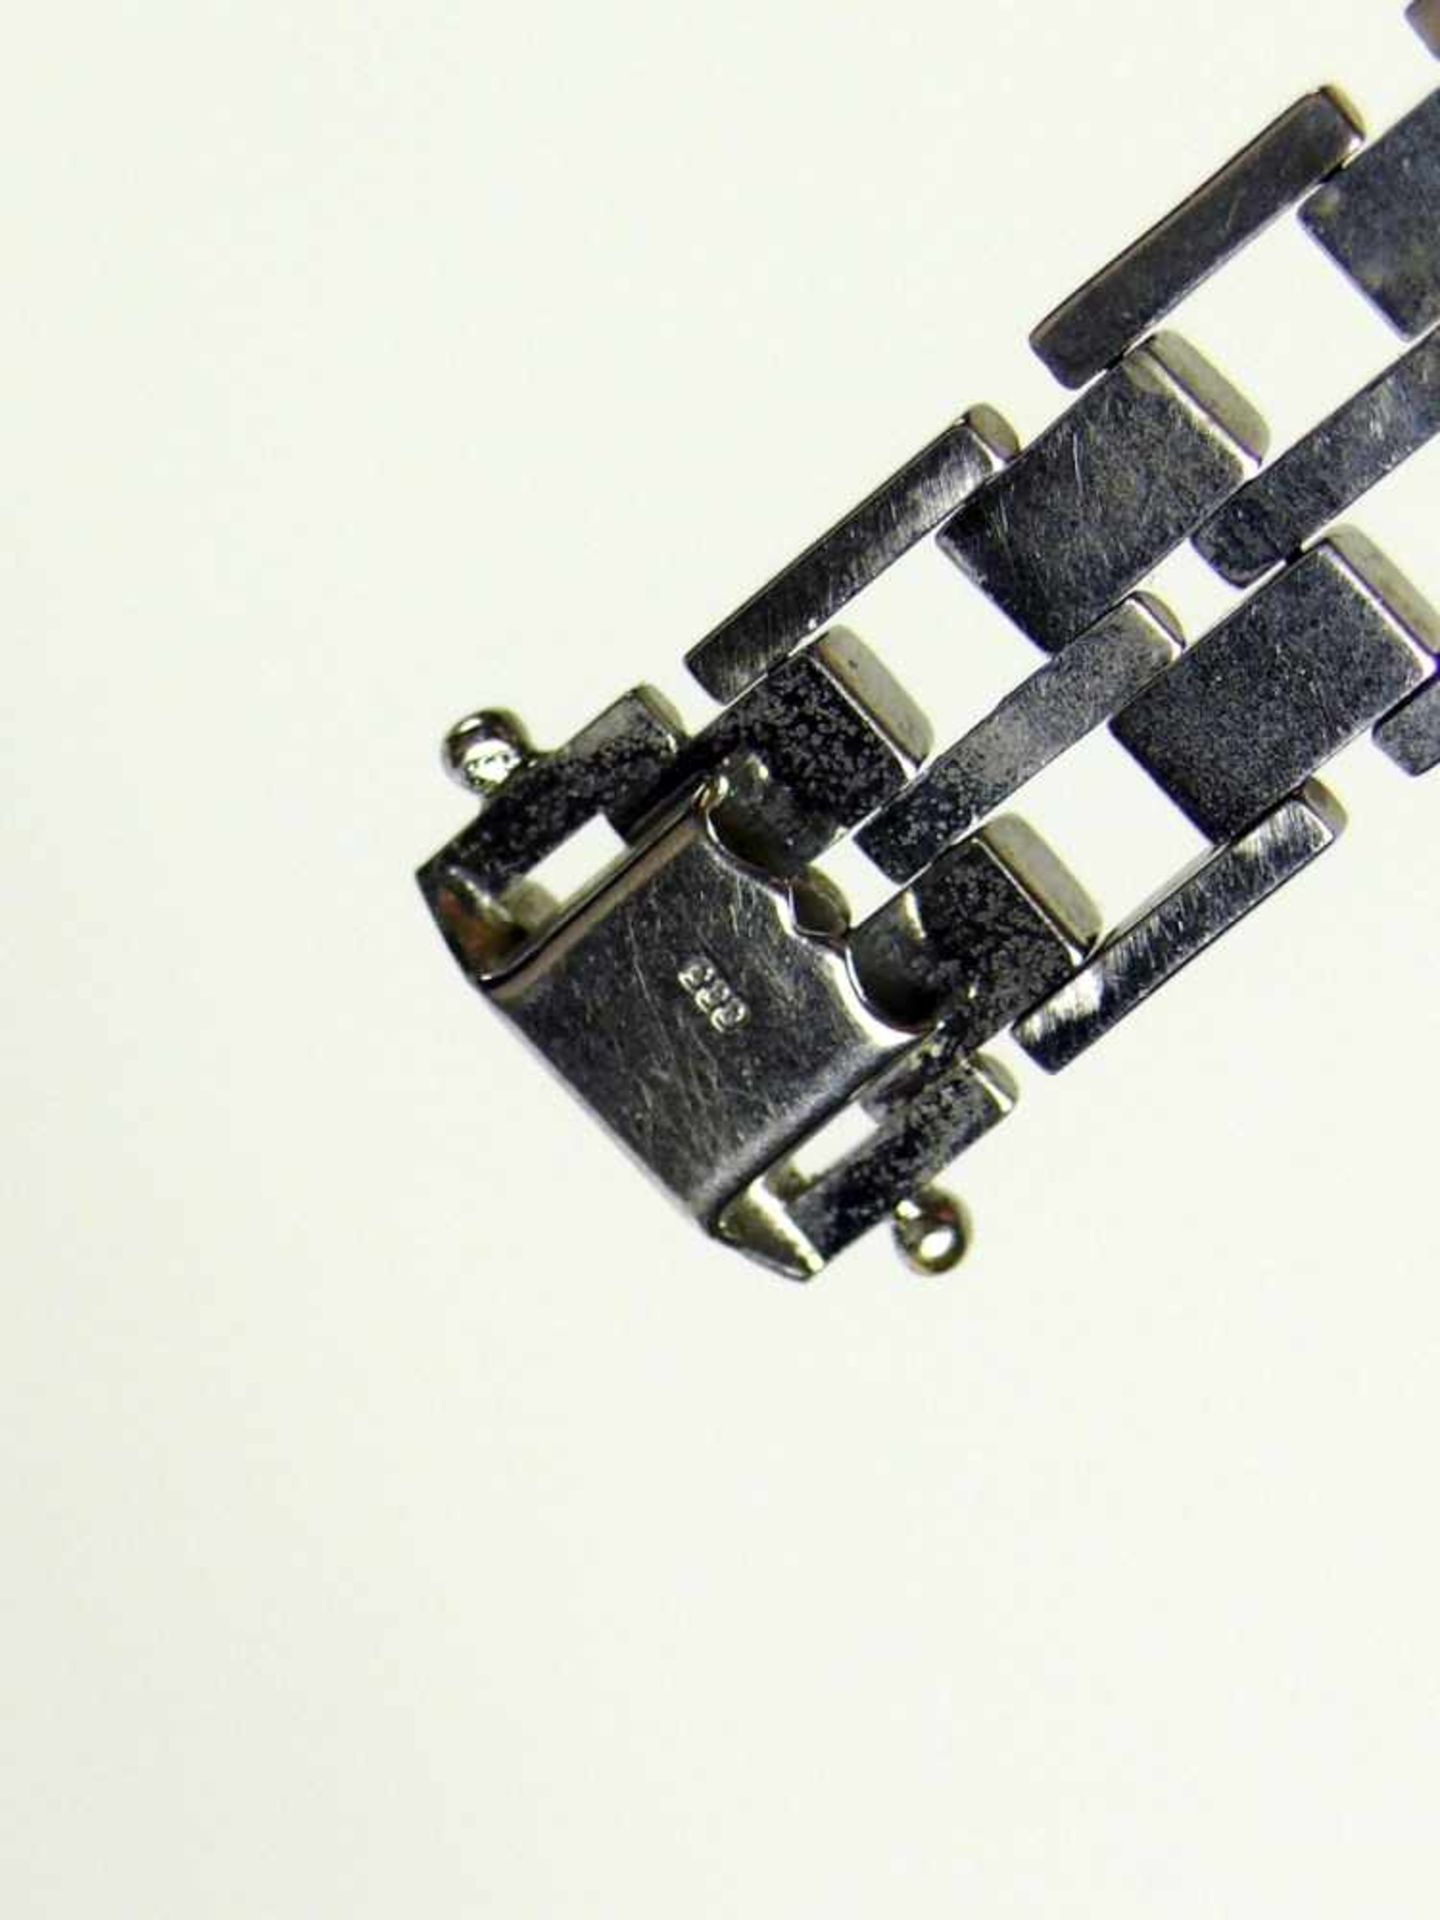 Armkette 8ct WG; 1 Seitenglied fehlt; 26g; L: 20 cm - Image 3 of 3